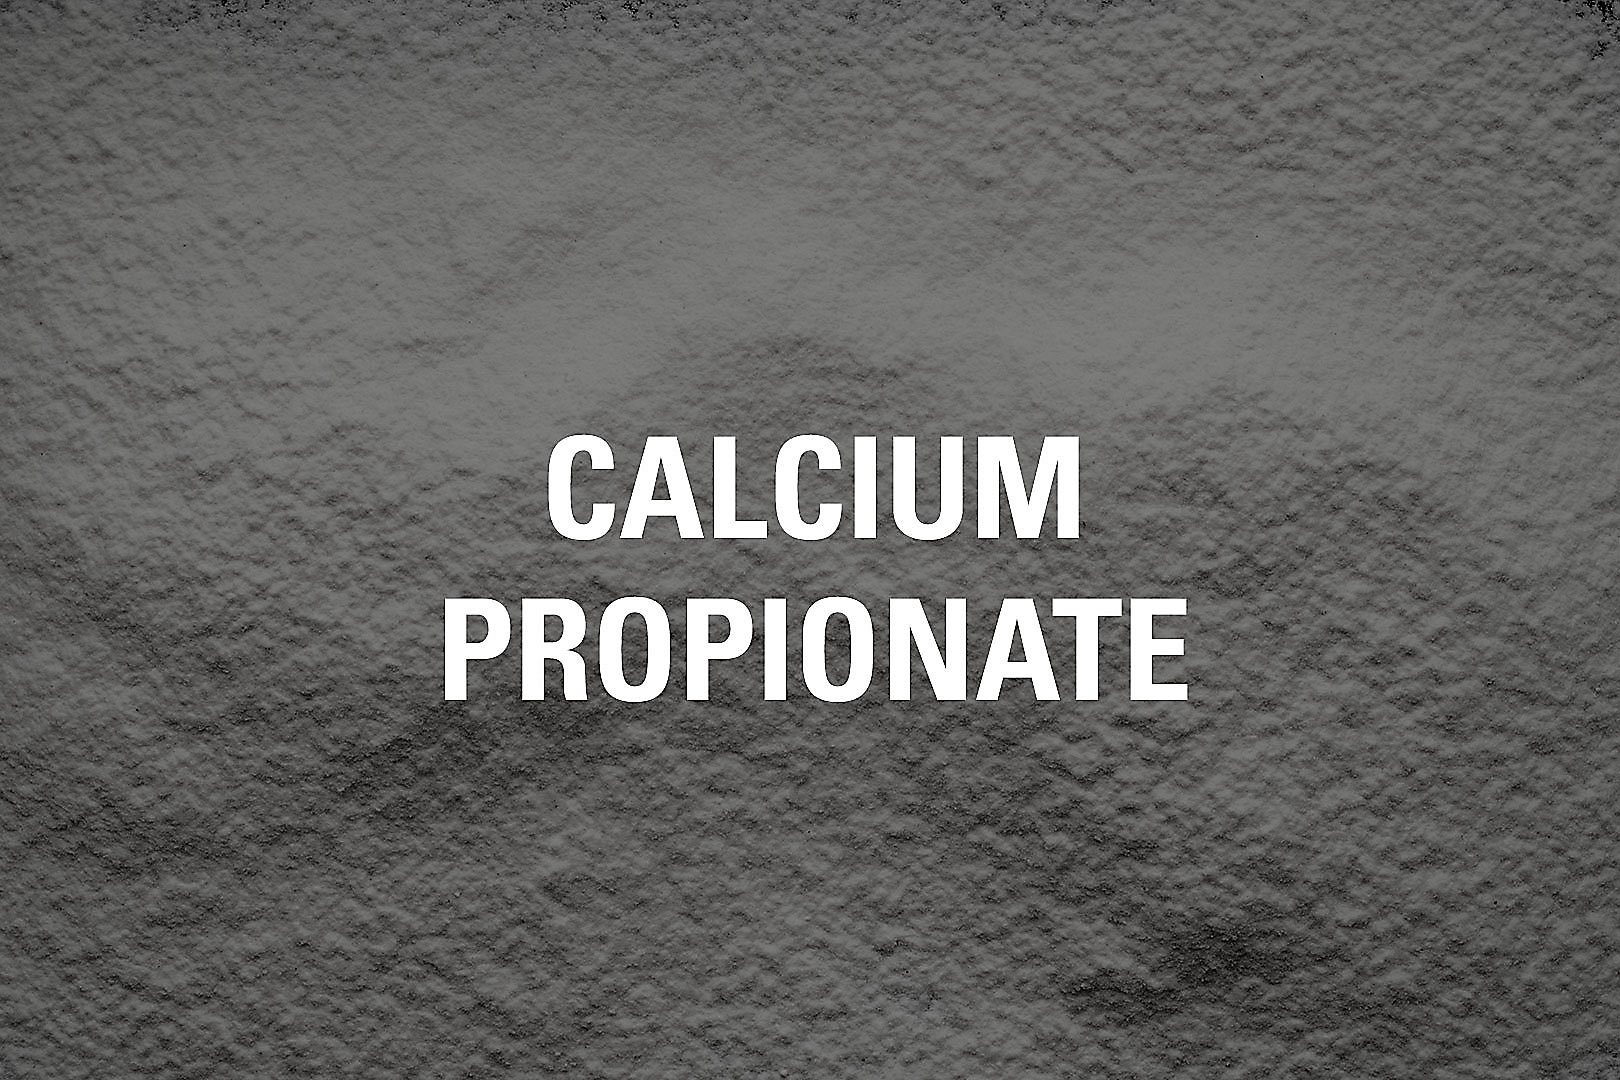 calcium-propionate-tile-1